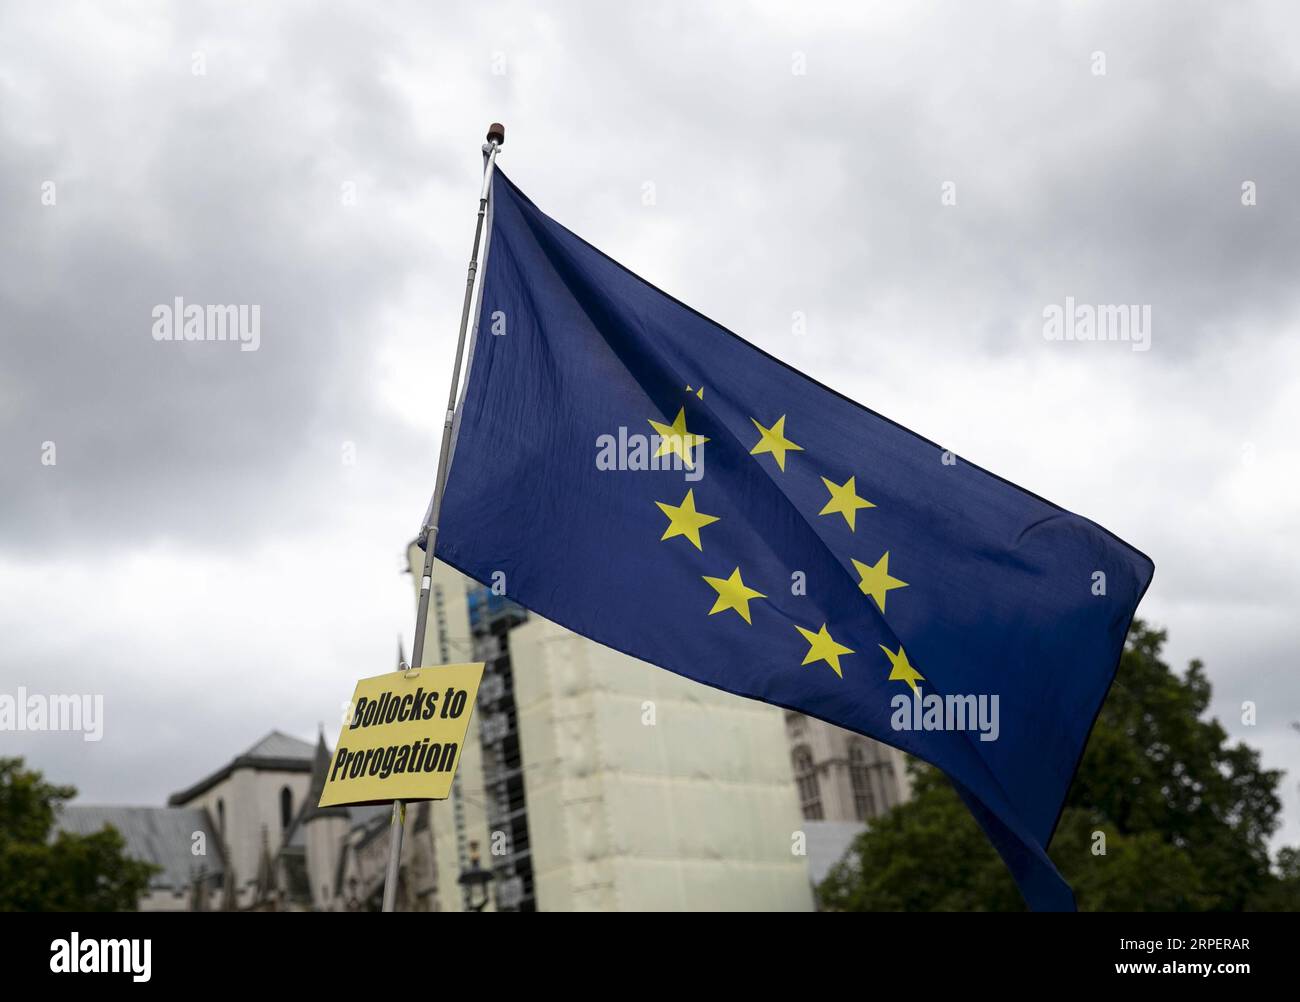 (190903) -- LONDON, 3. September 2019 -- Ein Slogan und die Flagge der Europäischen Union sind am 3. September 2019 vor dem House of Parliament in London zu sehen. Rebell Tory Mitglieder des britischen parlaments sind bereit, sich ihren Kollegen von der Opposition Labour anzuschließen, um am Dienstag einen Gesetzesentwurf vorzulegen, um Großbritannien daran zu hindern, die Europäische Union am 31. Oktober ohne Vereinbarung zu verlassen. Das Gesetz wird vorgelegt, während das parlament nach der Sommerpause unter Androhung des britischen Premierministers Boris Johnson, eine Sofortwahl einzuleiten, wieder aufgenommen wird. ) GROSSBRITANNIEN-LONDON-PARLAMENT-WIEDERAUFNAHME HanxYan PUBLICATIONxNOTxINxCHN Stockfoto